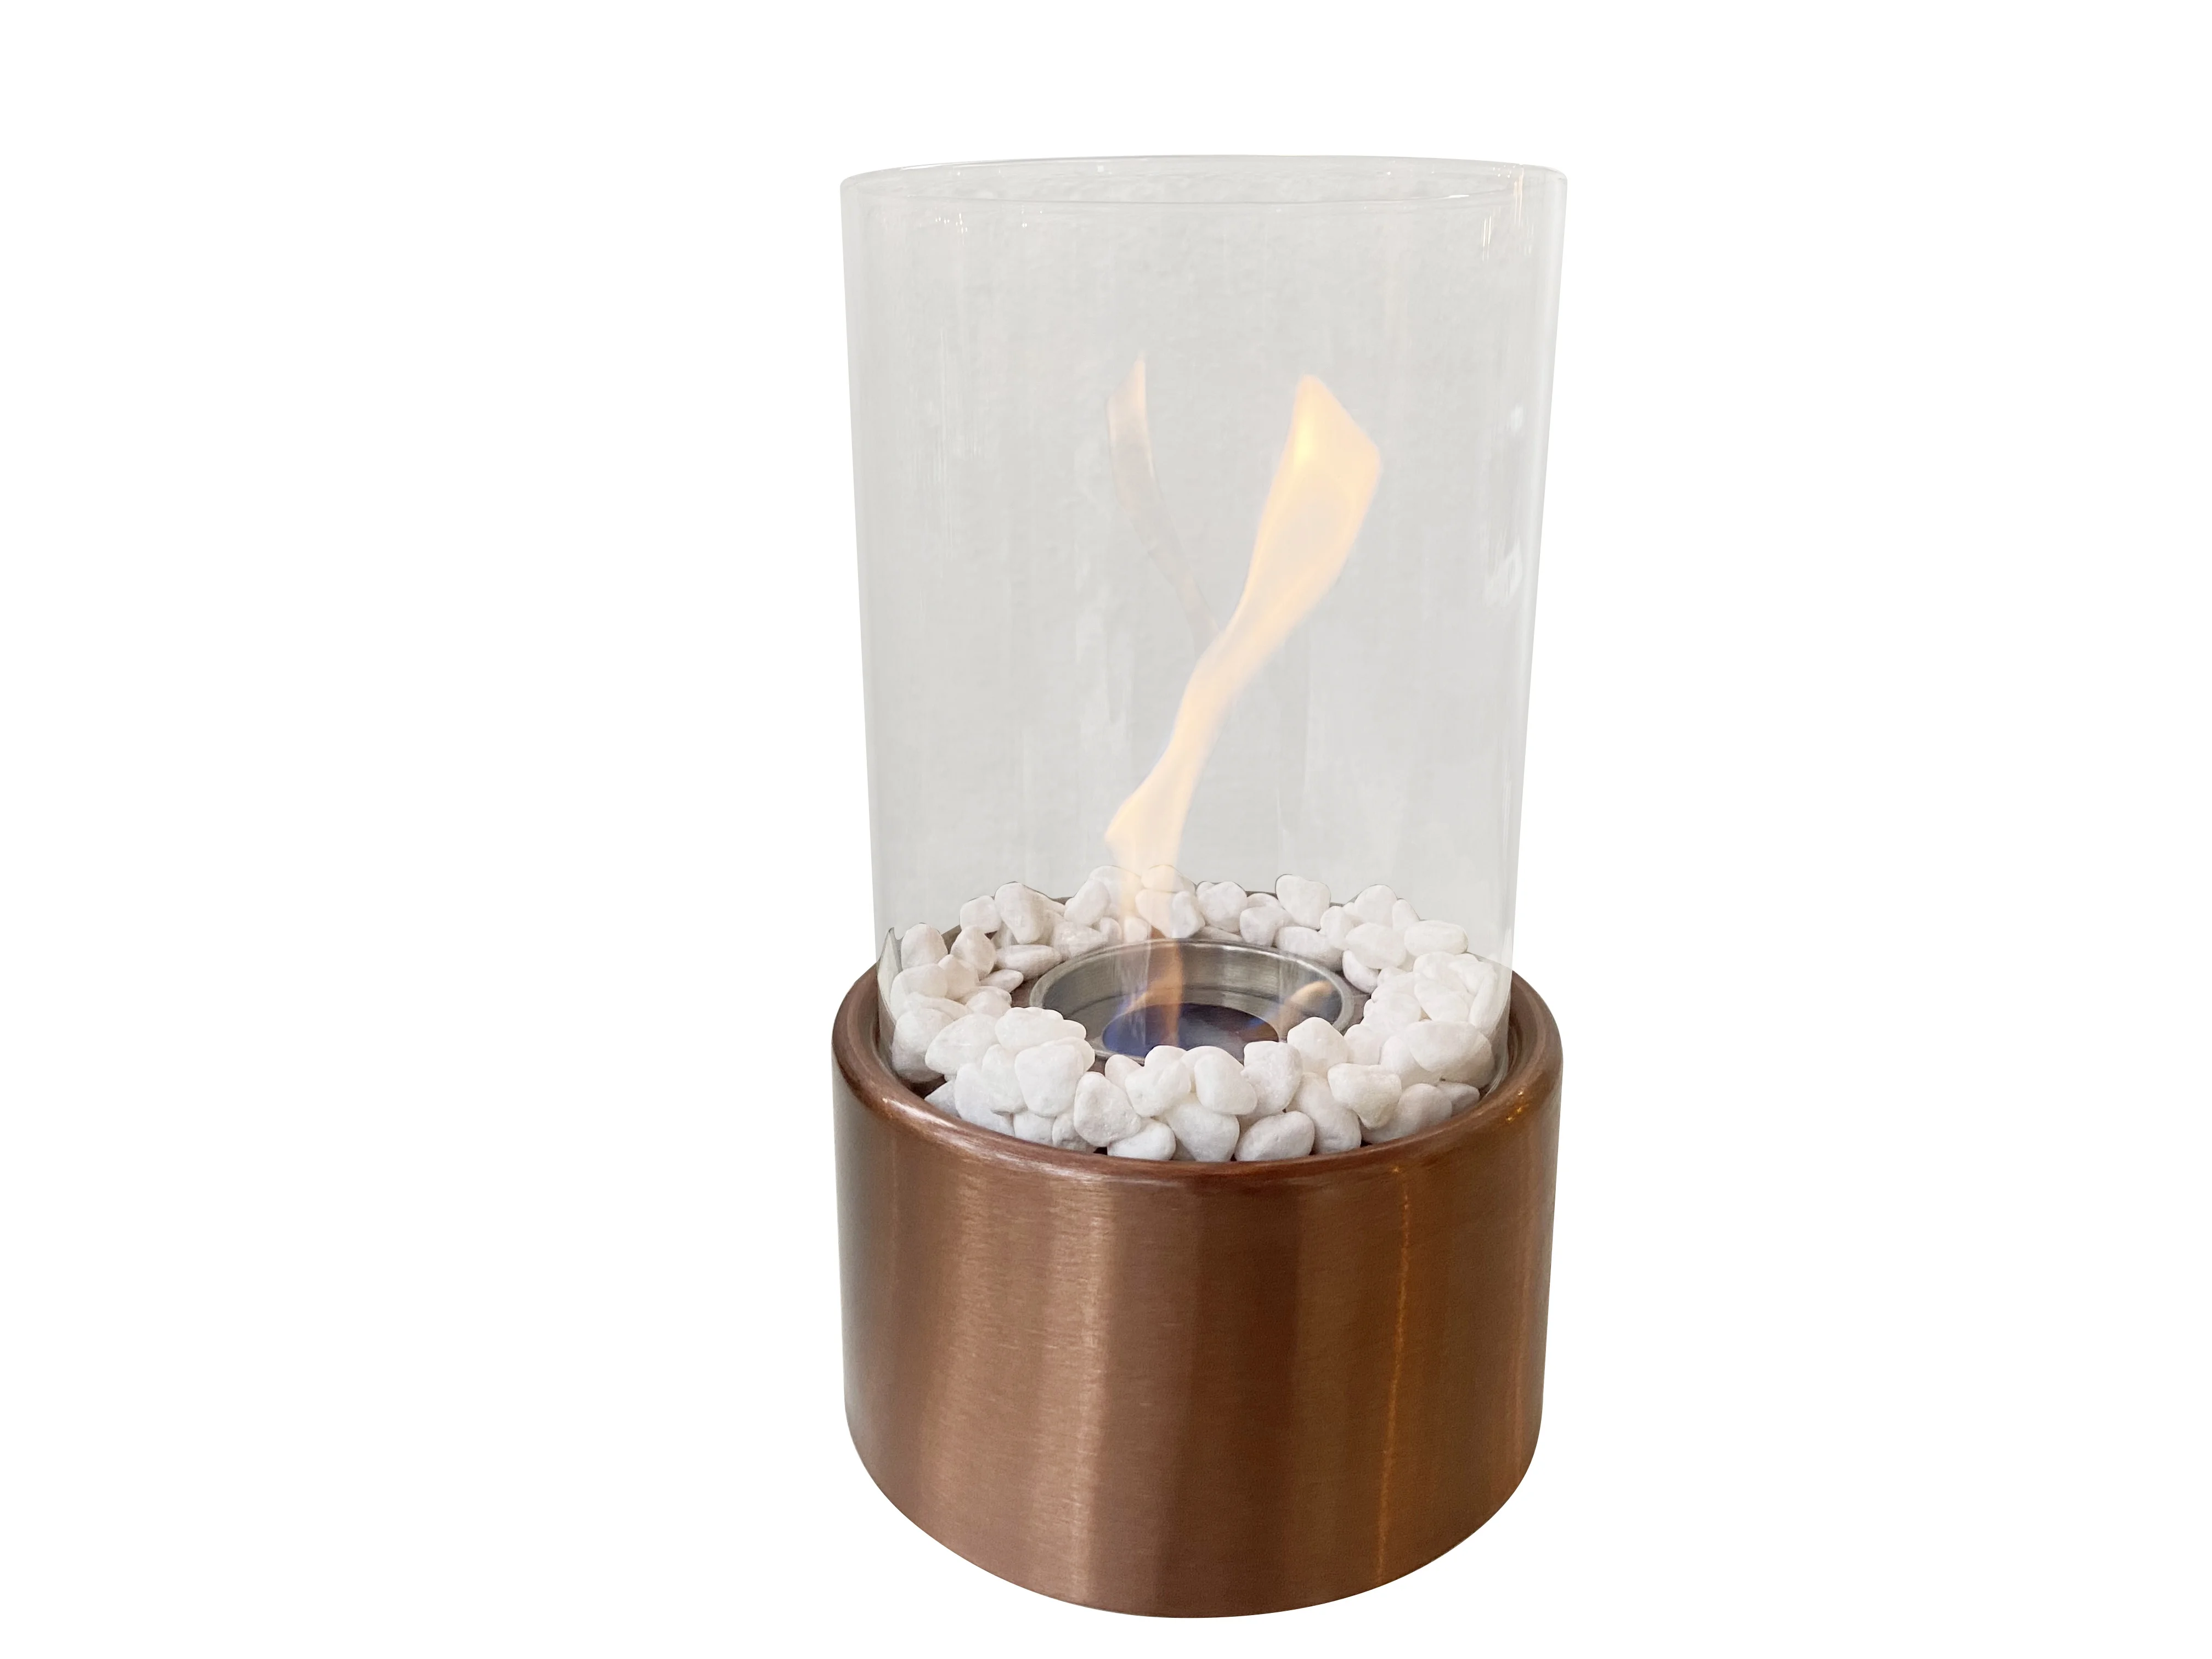 Durable cheminée de table en verre pour une chaleur pratique - Alibaba.com